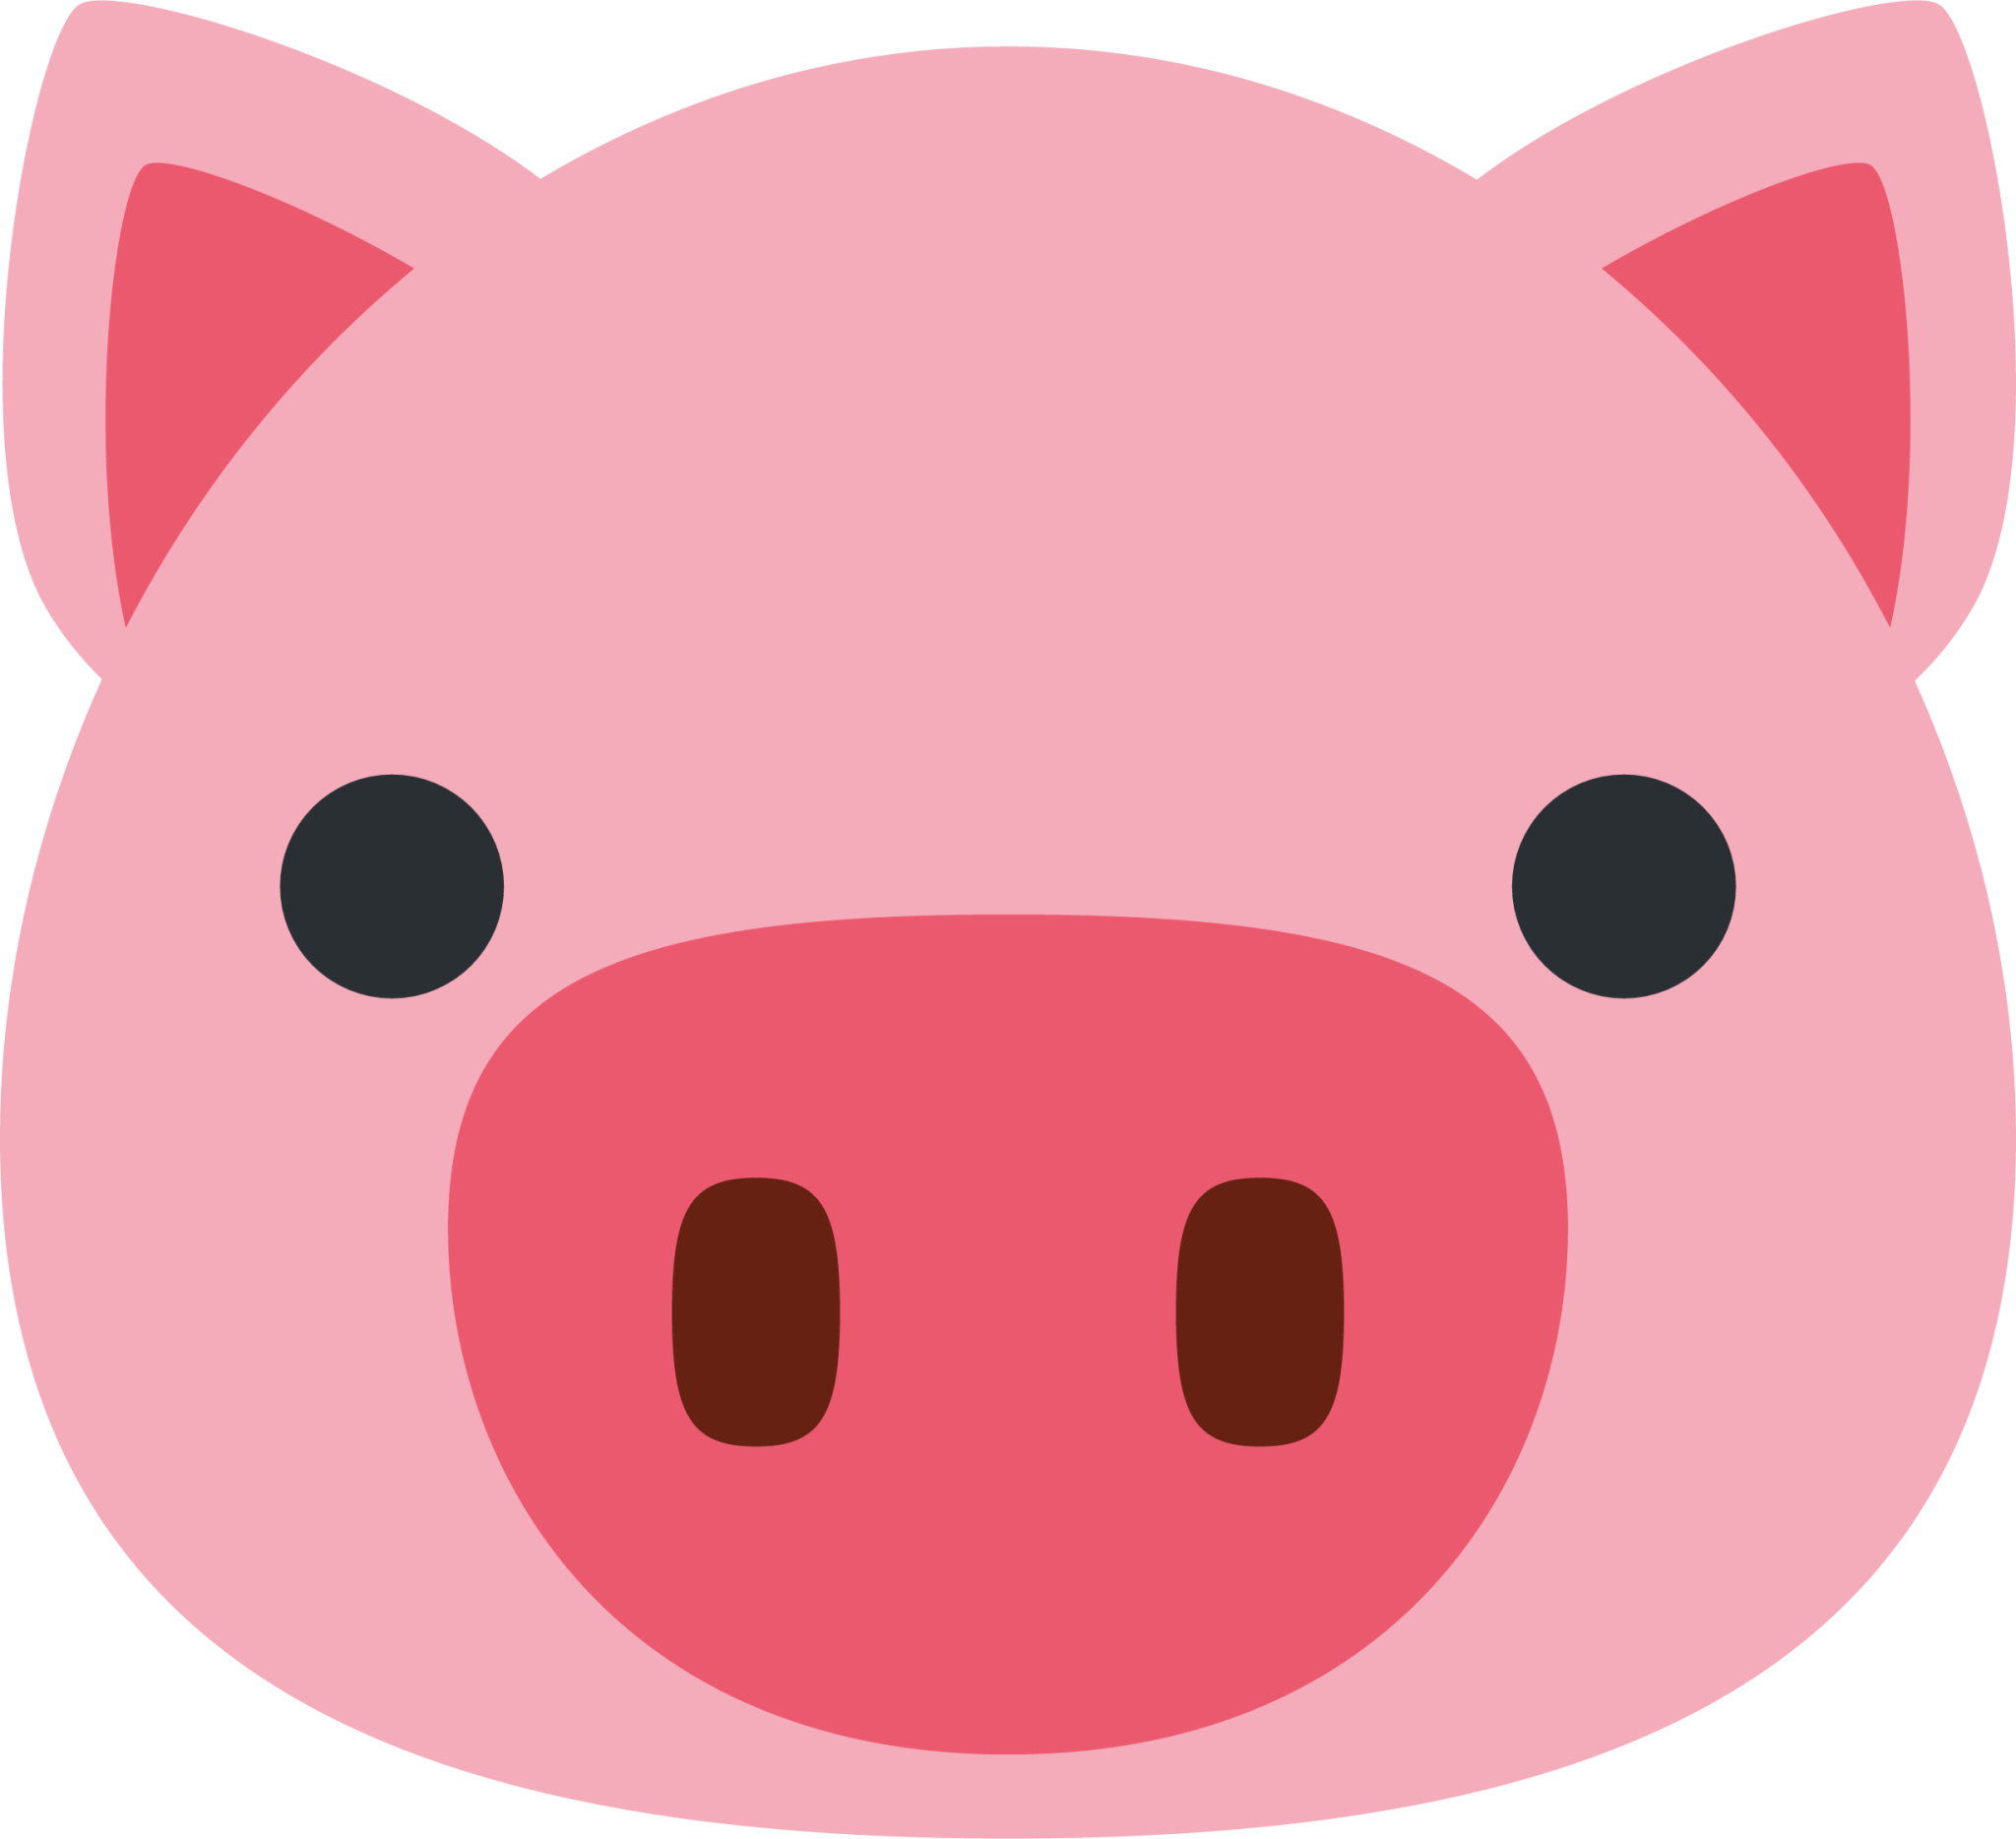 pig-face-emoji-2048x1868-1jor51f2.png